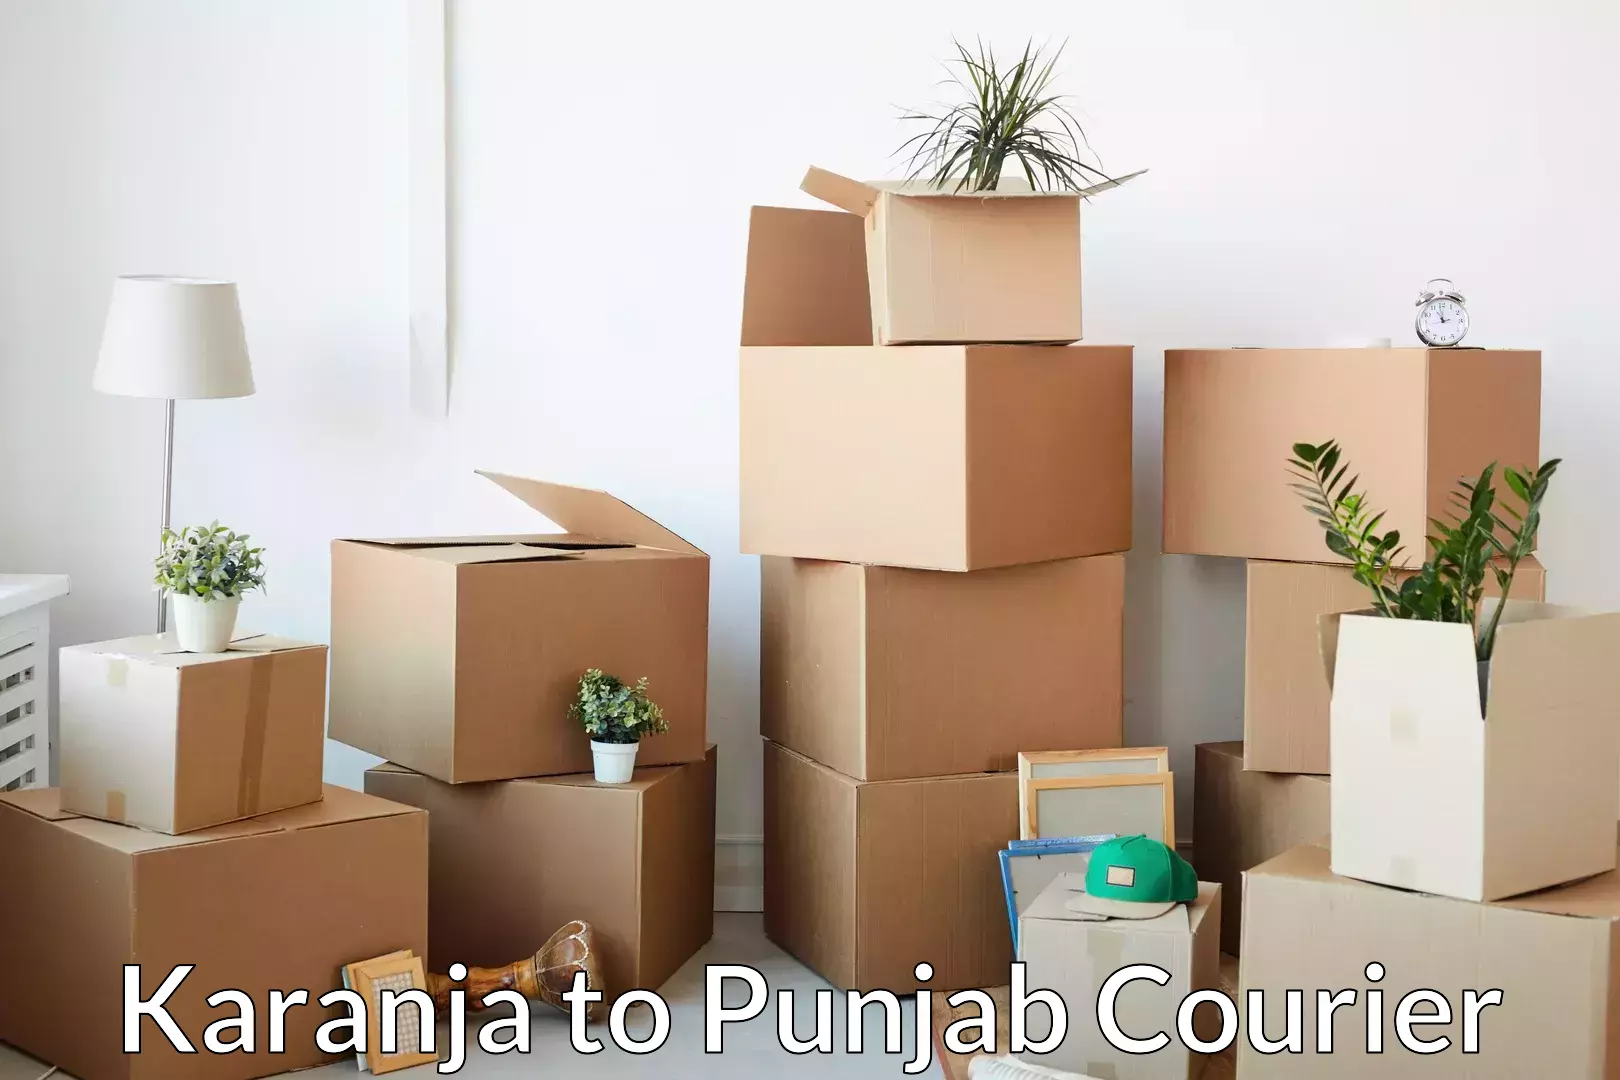 Affordable furniture movers Karanja to Punjab